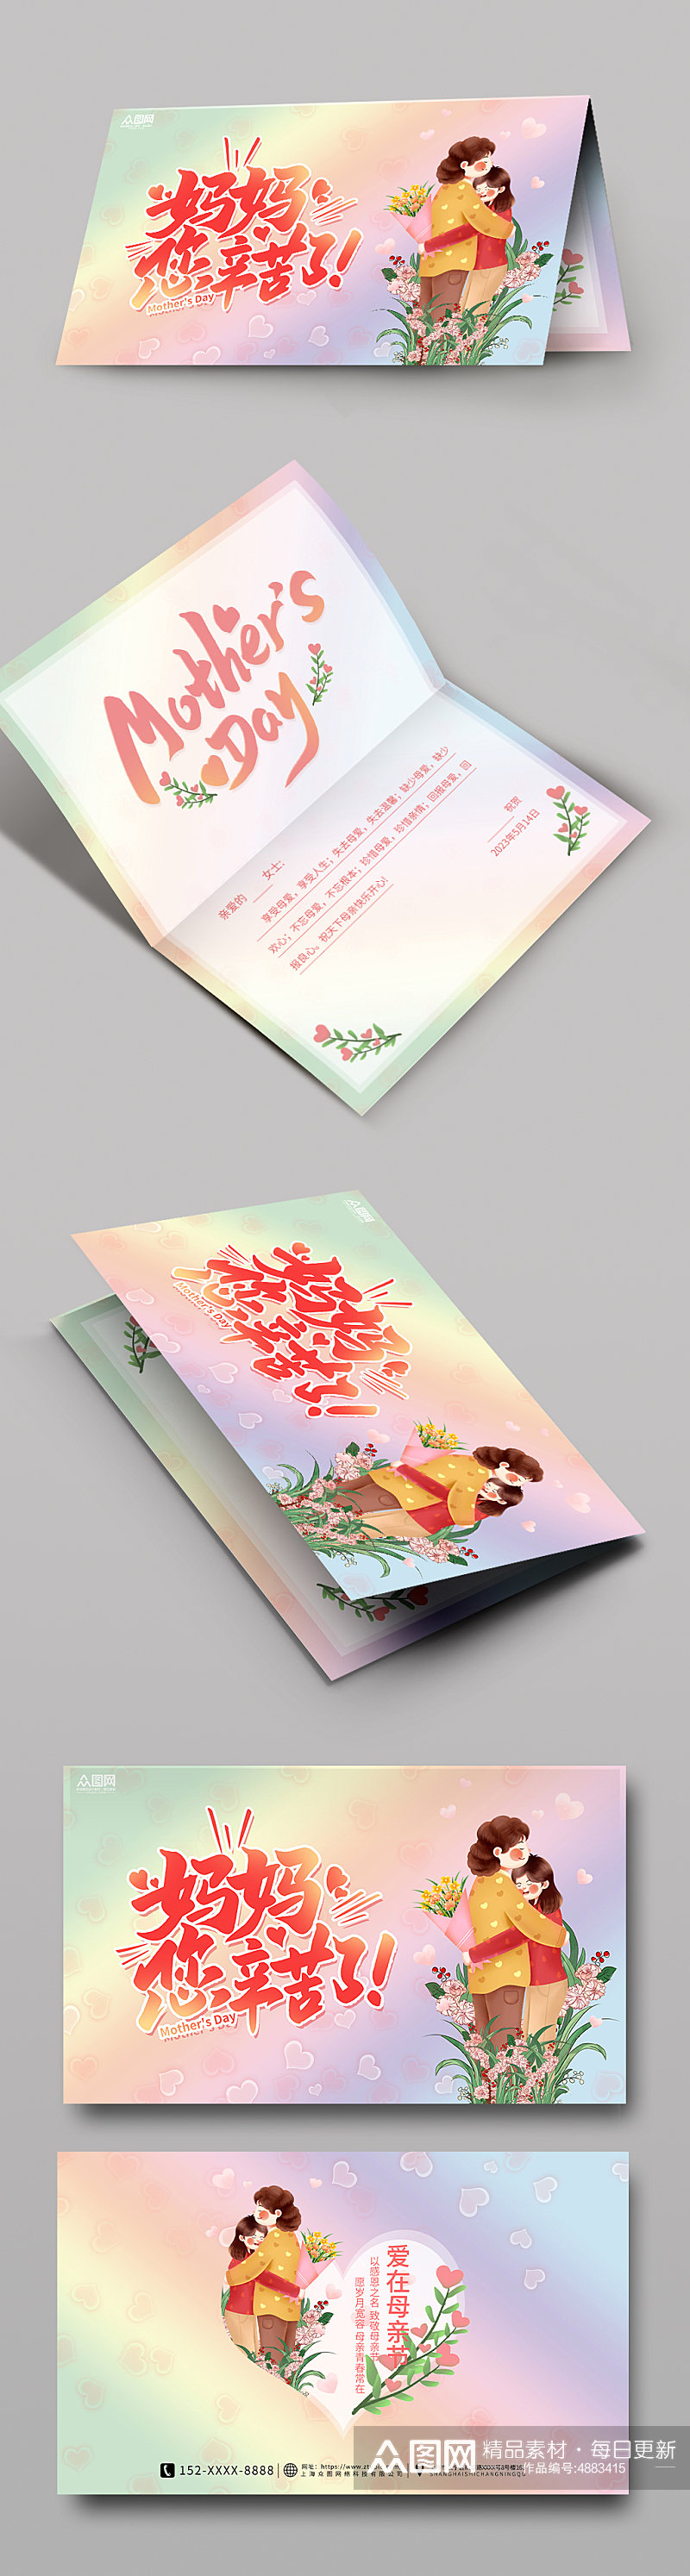 粉色温馨感恩母亲节卡片贺卡设计素材